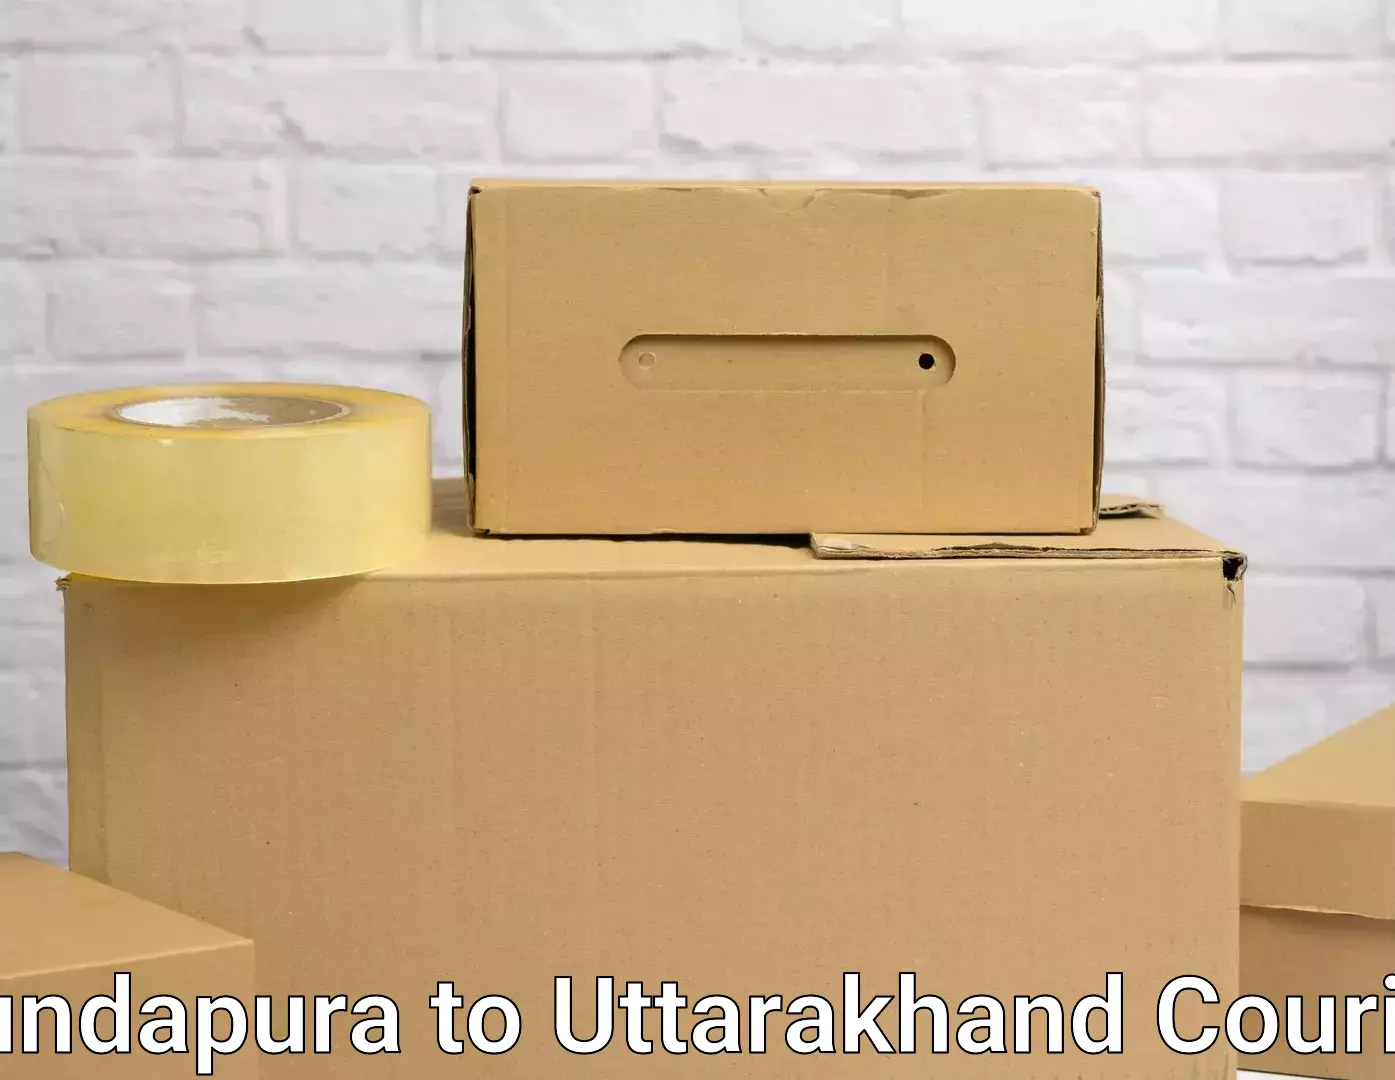 Professional packing services Kundapura to Uttarakhand